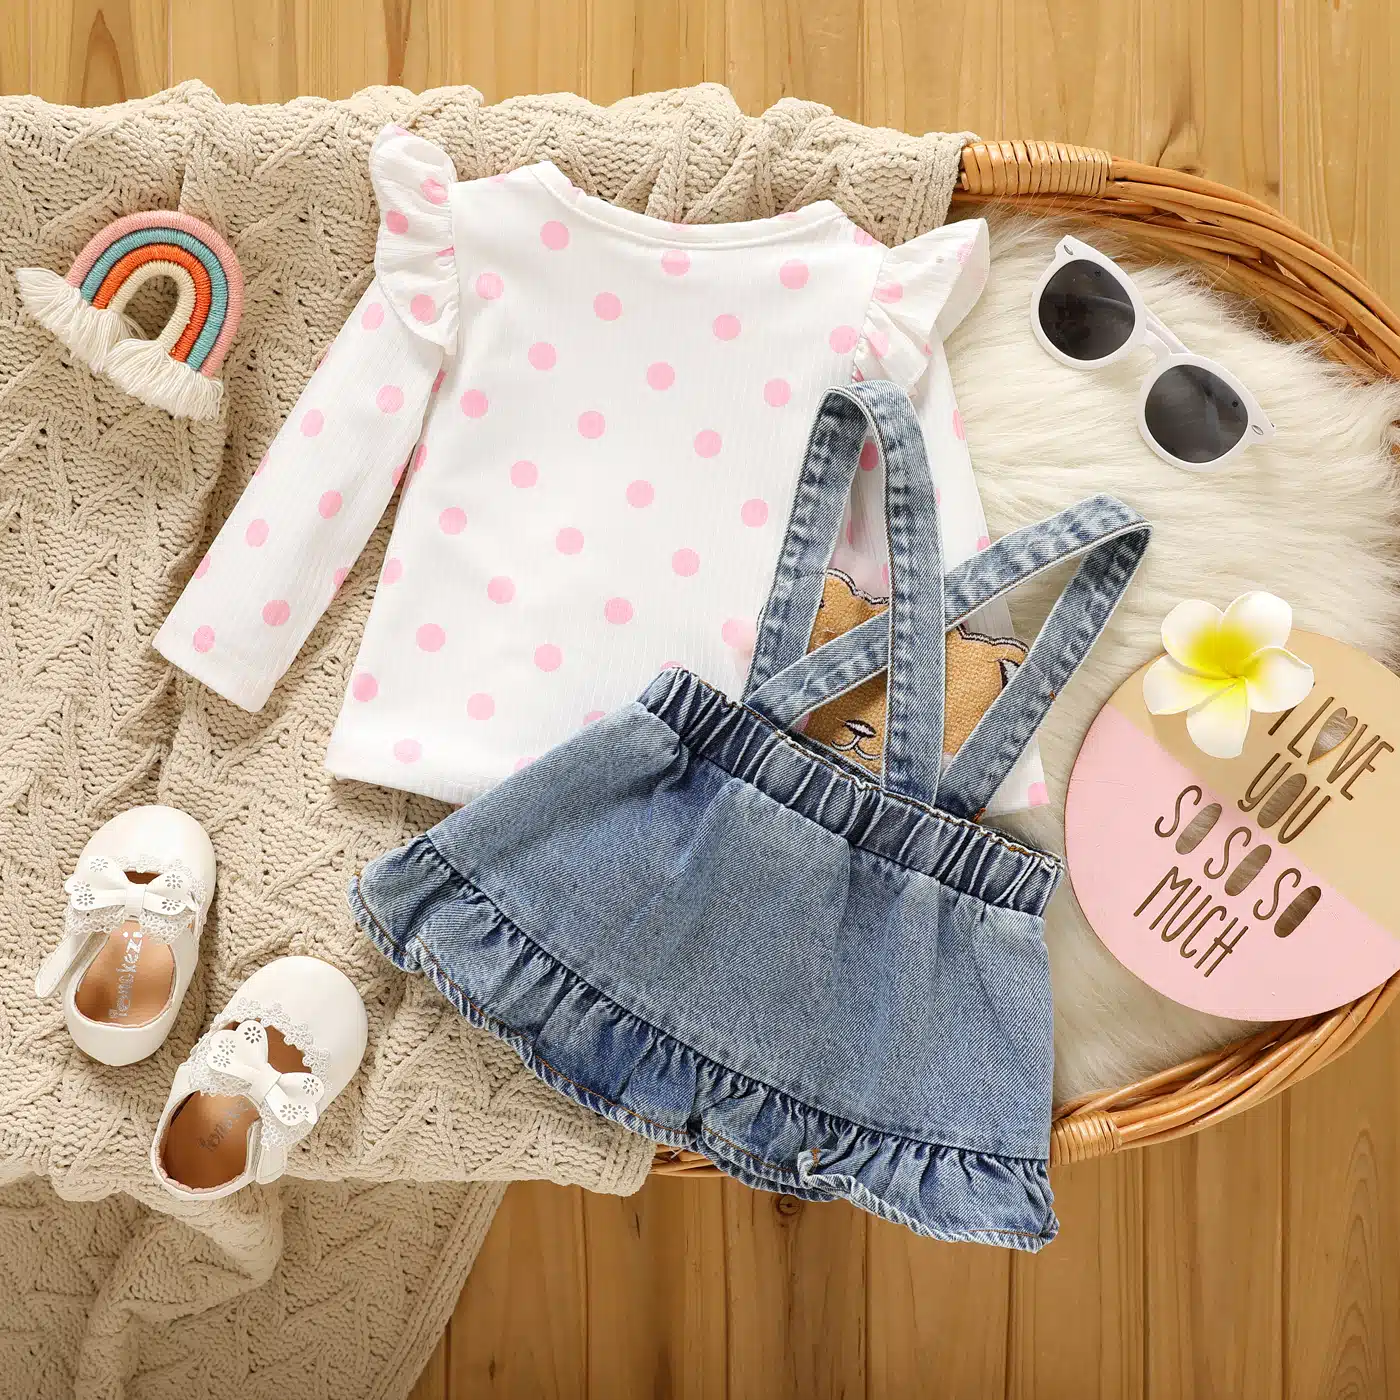 Sur un meuble, on voit une corbeille à langer dans laquelle sont joliment exposés un plaid beige et une tenue composée d'une tee-shirt manche longue blanc et rose et d'une jupe-salopette pour bébé.